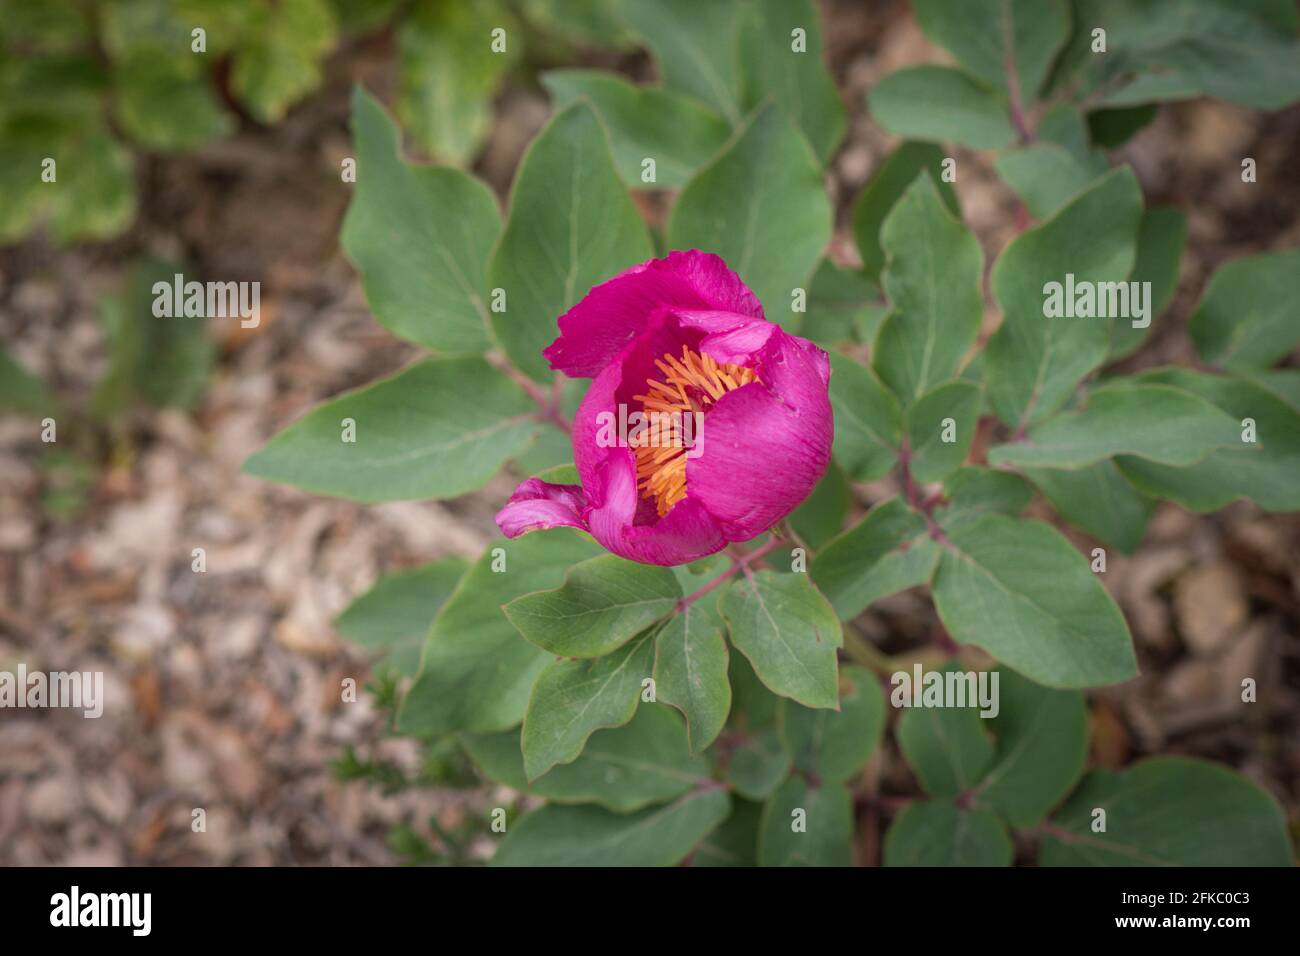 Paeonia broteroi, Paeonia broteri, Wild Peony, Ronda, Andalucia, South Spain Stock Photo